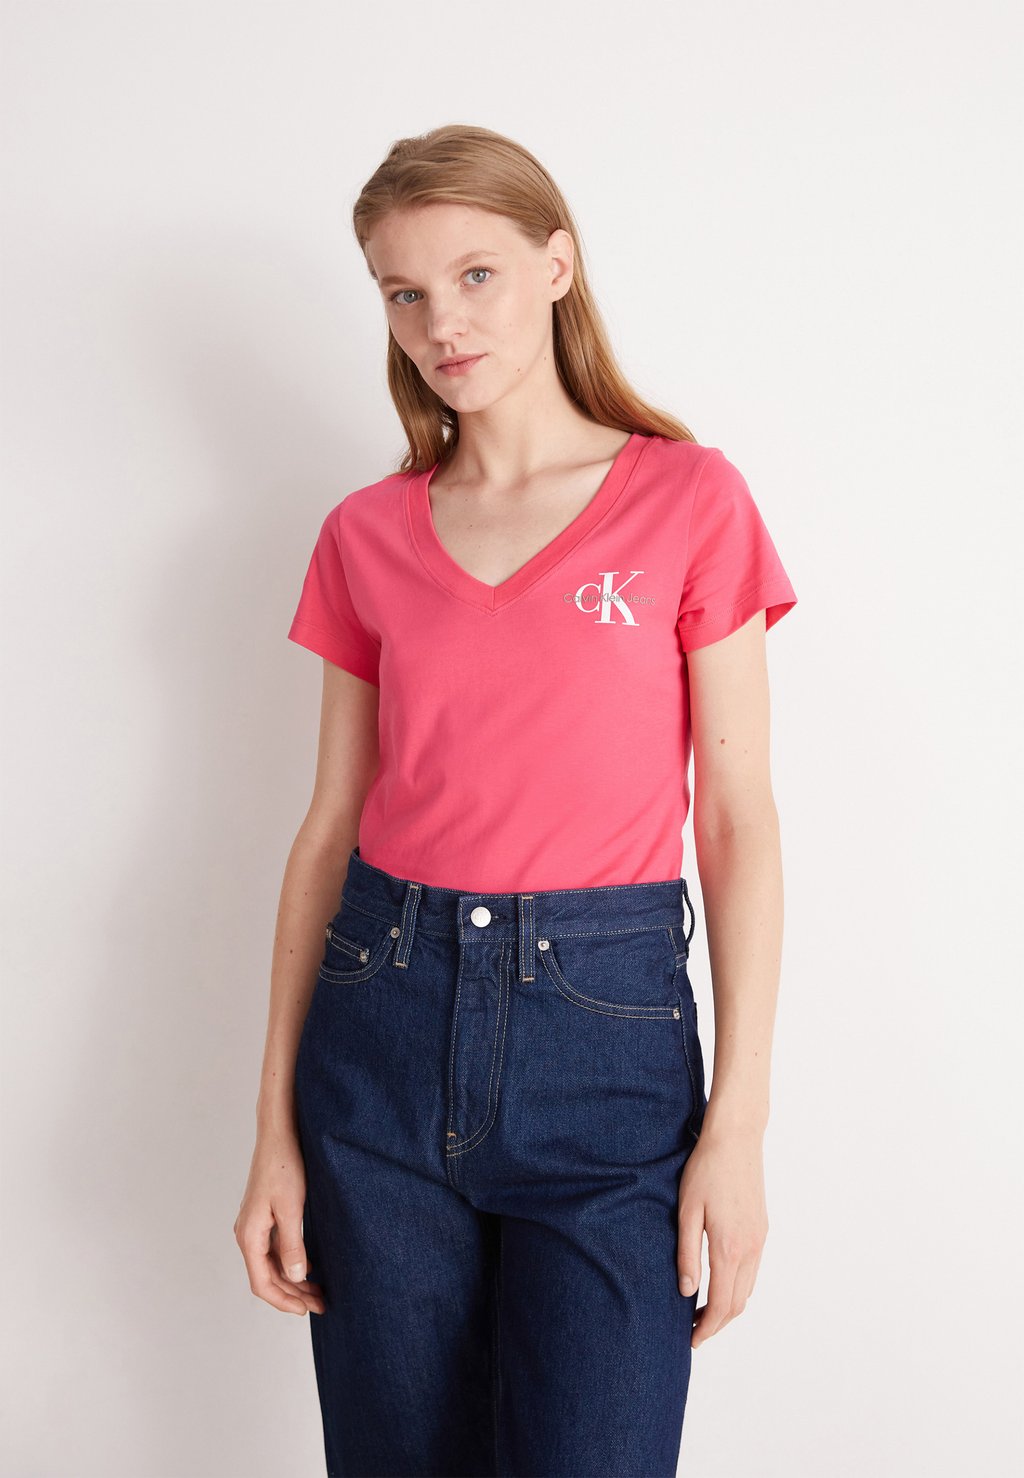 Базовая футболка ФУТБОЛКА CLASSIC SLIM VNECK TEE Calvin Klein Jeans, розовая вспышка